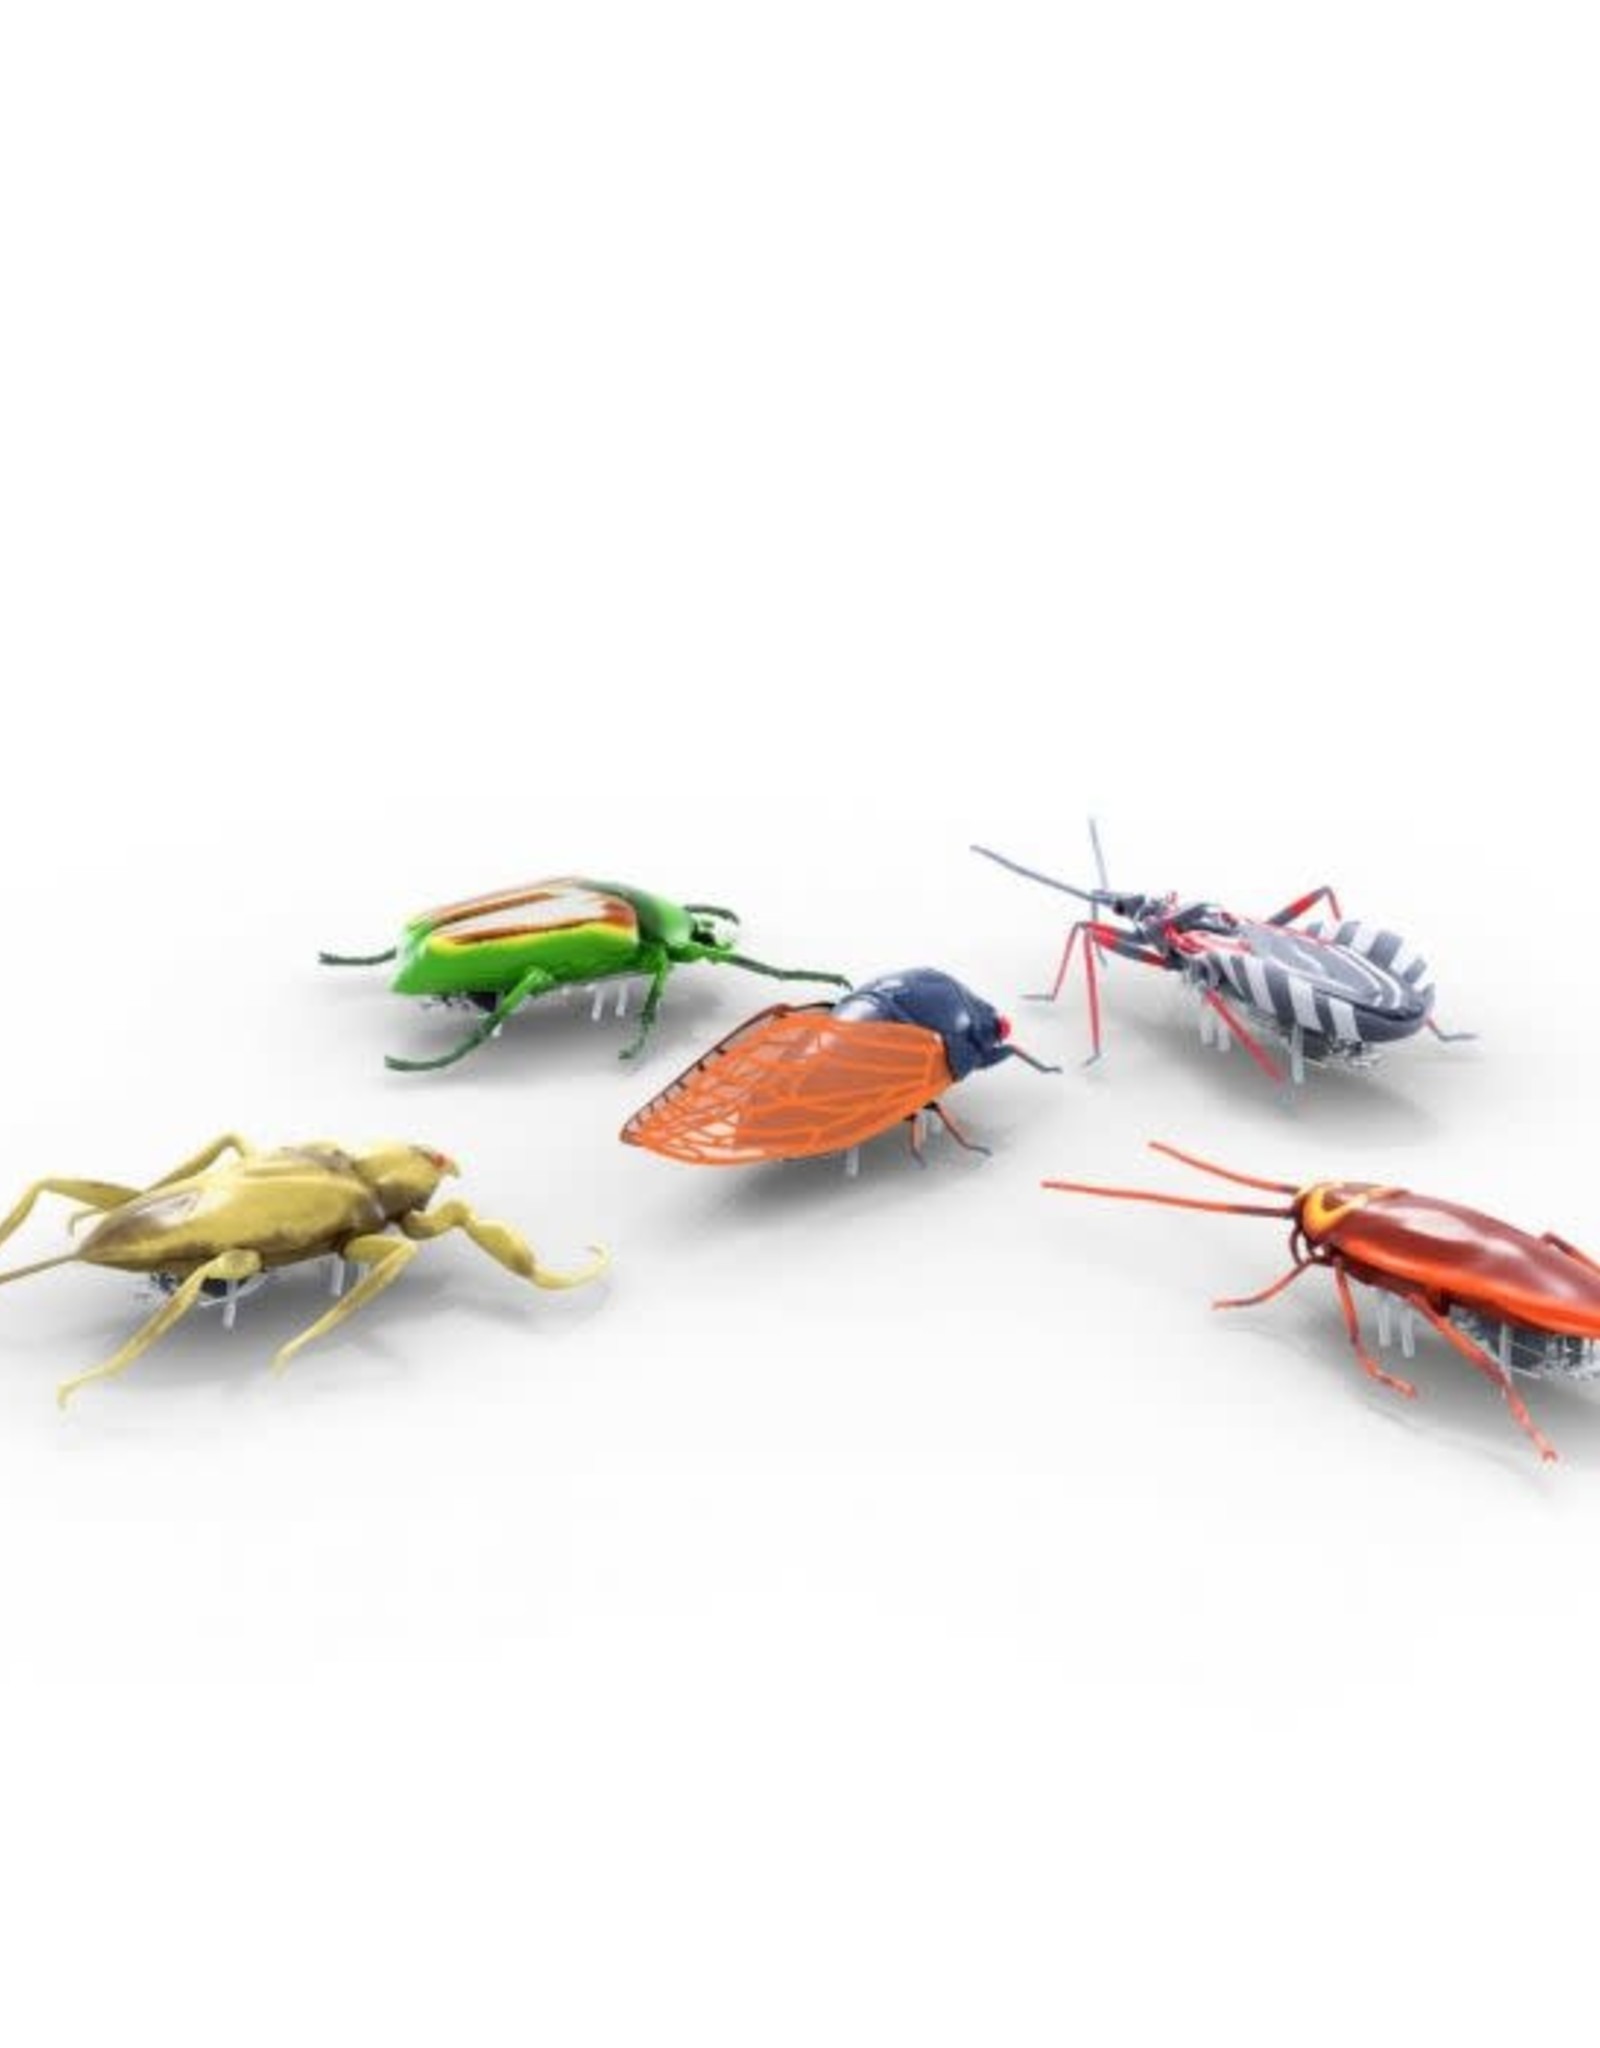 Hexbugs REAL Bugs Nano 5 pack